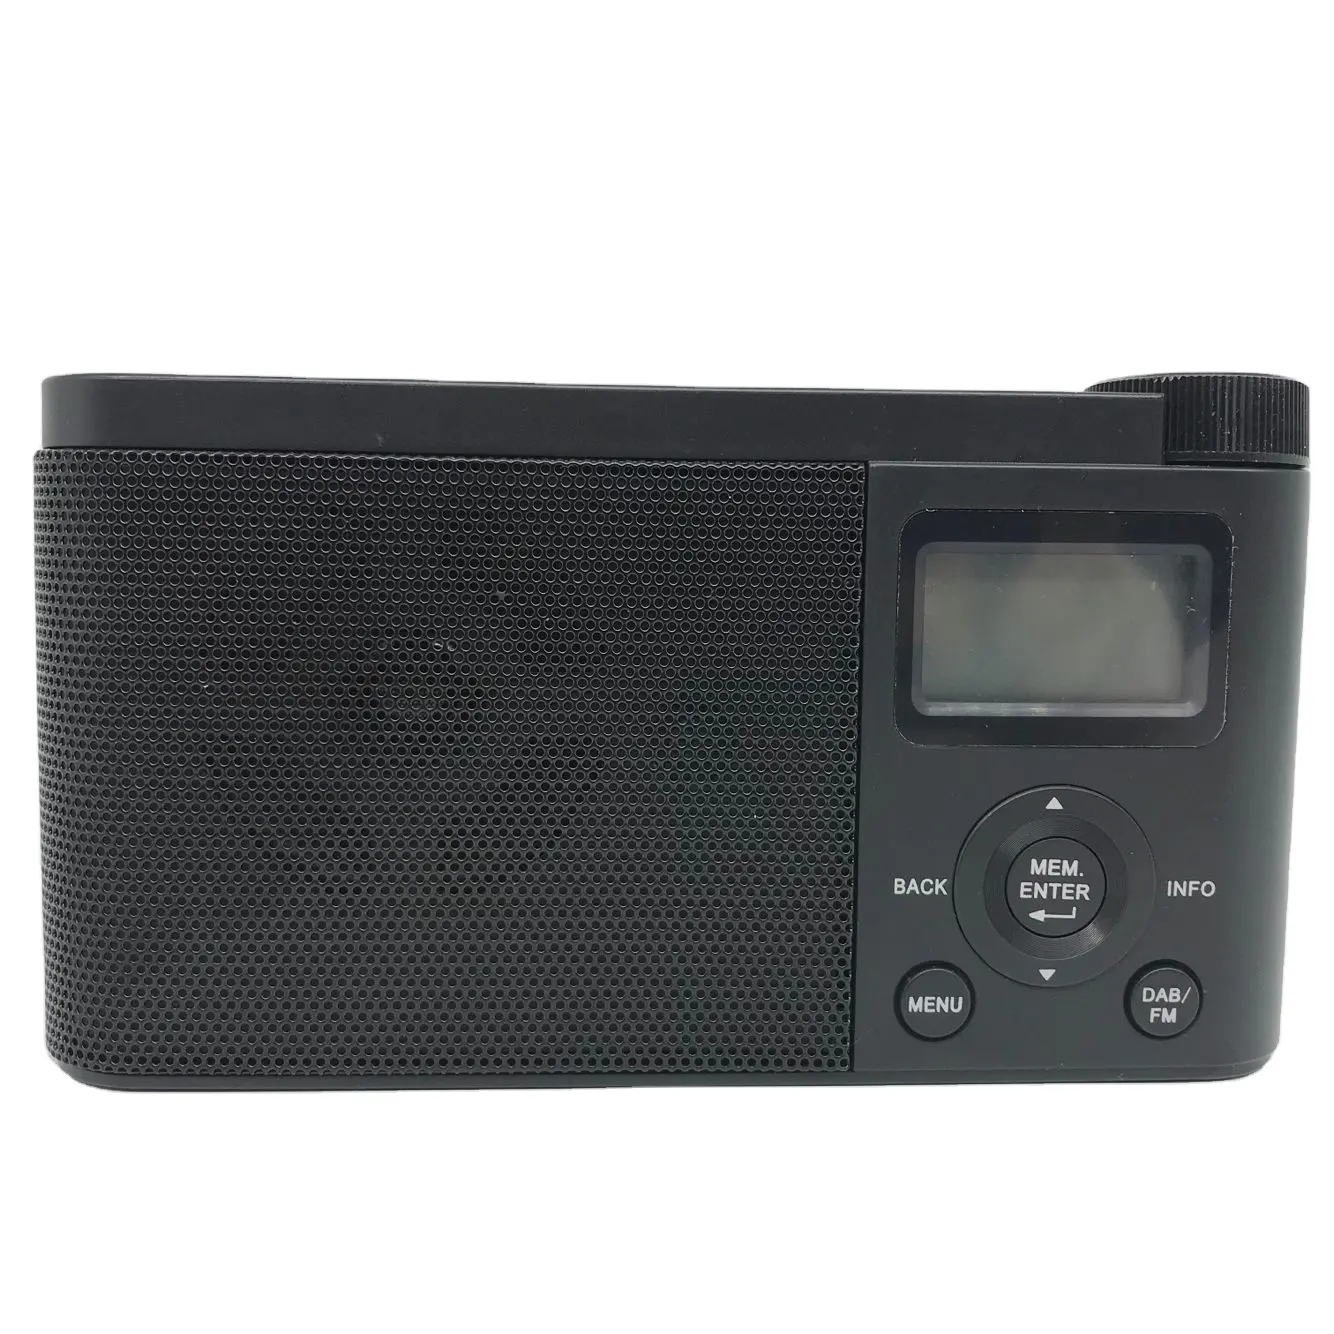 Hot Selling Digital anzeige mit eingebautem Lautsprecher mit Scheinwerfer Auto Scan und Speicher funktion DAB/FM Radio